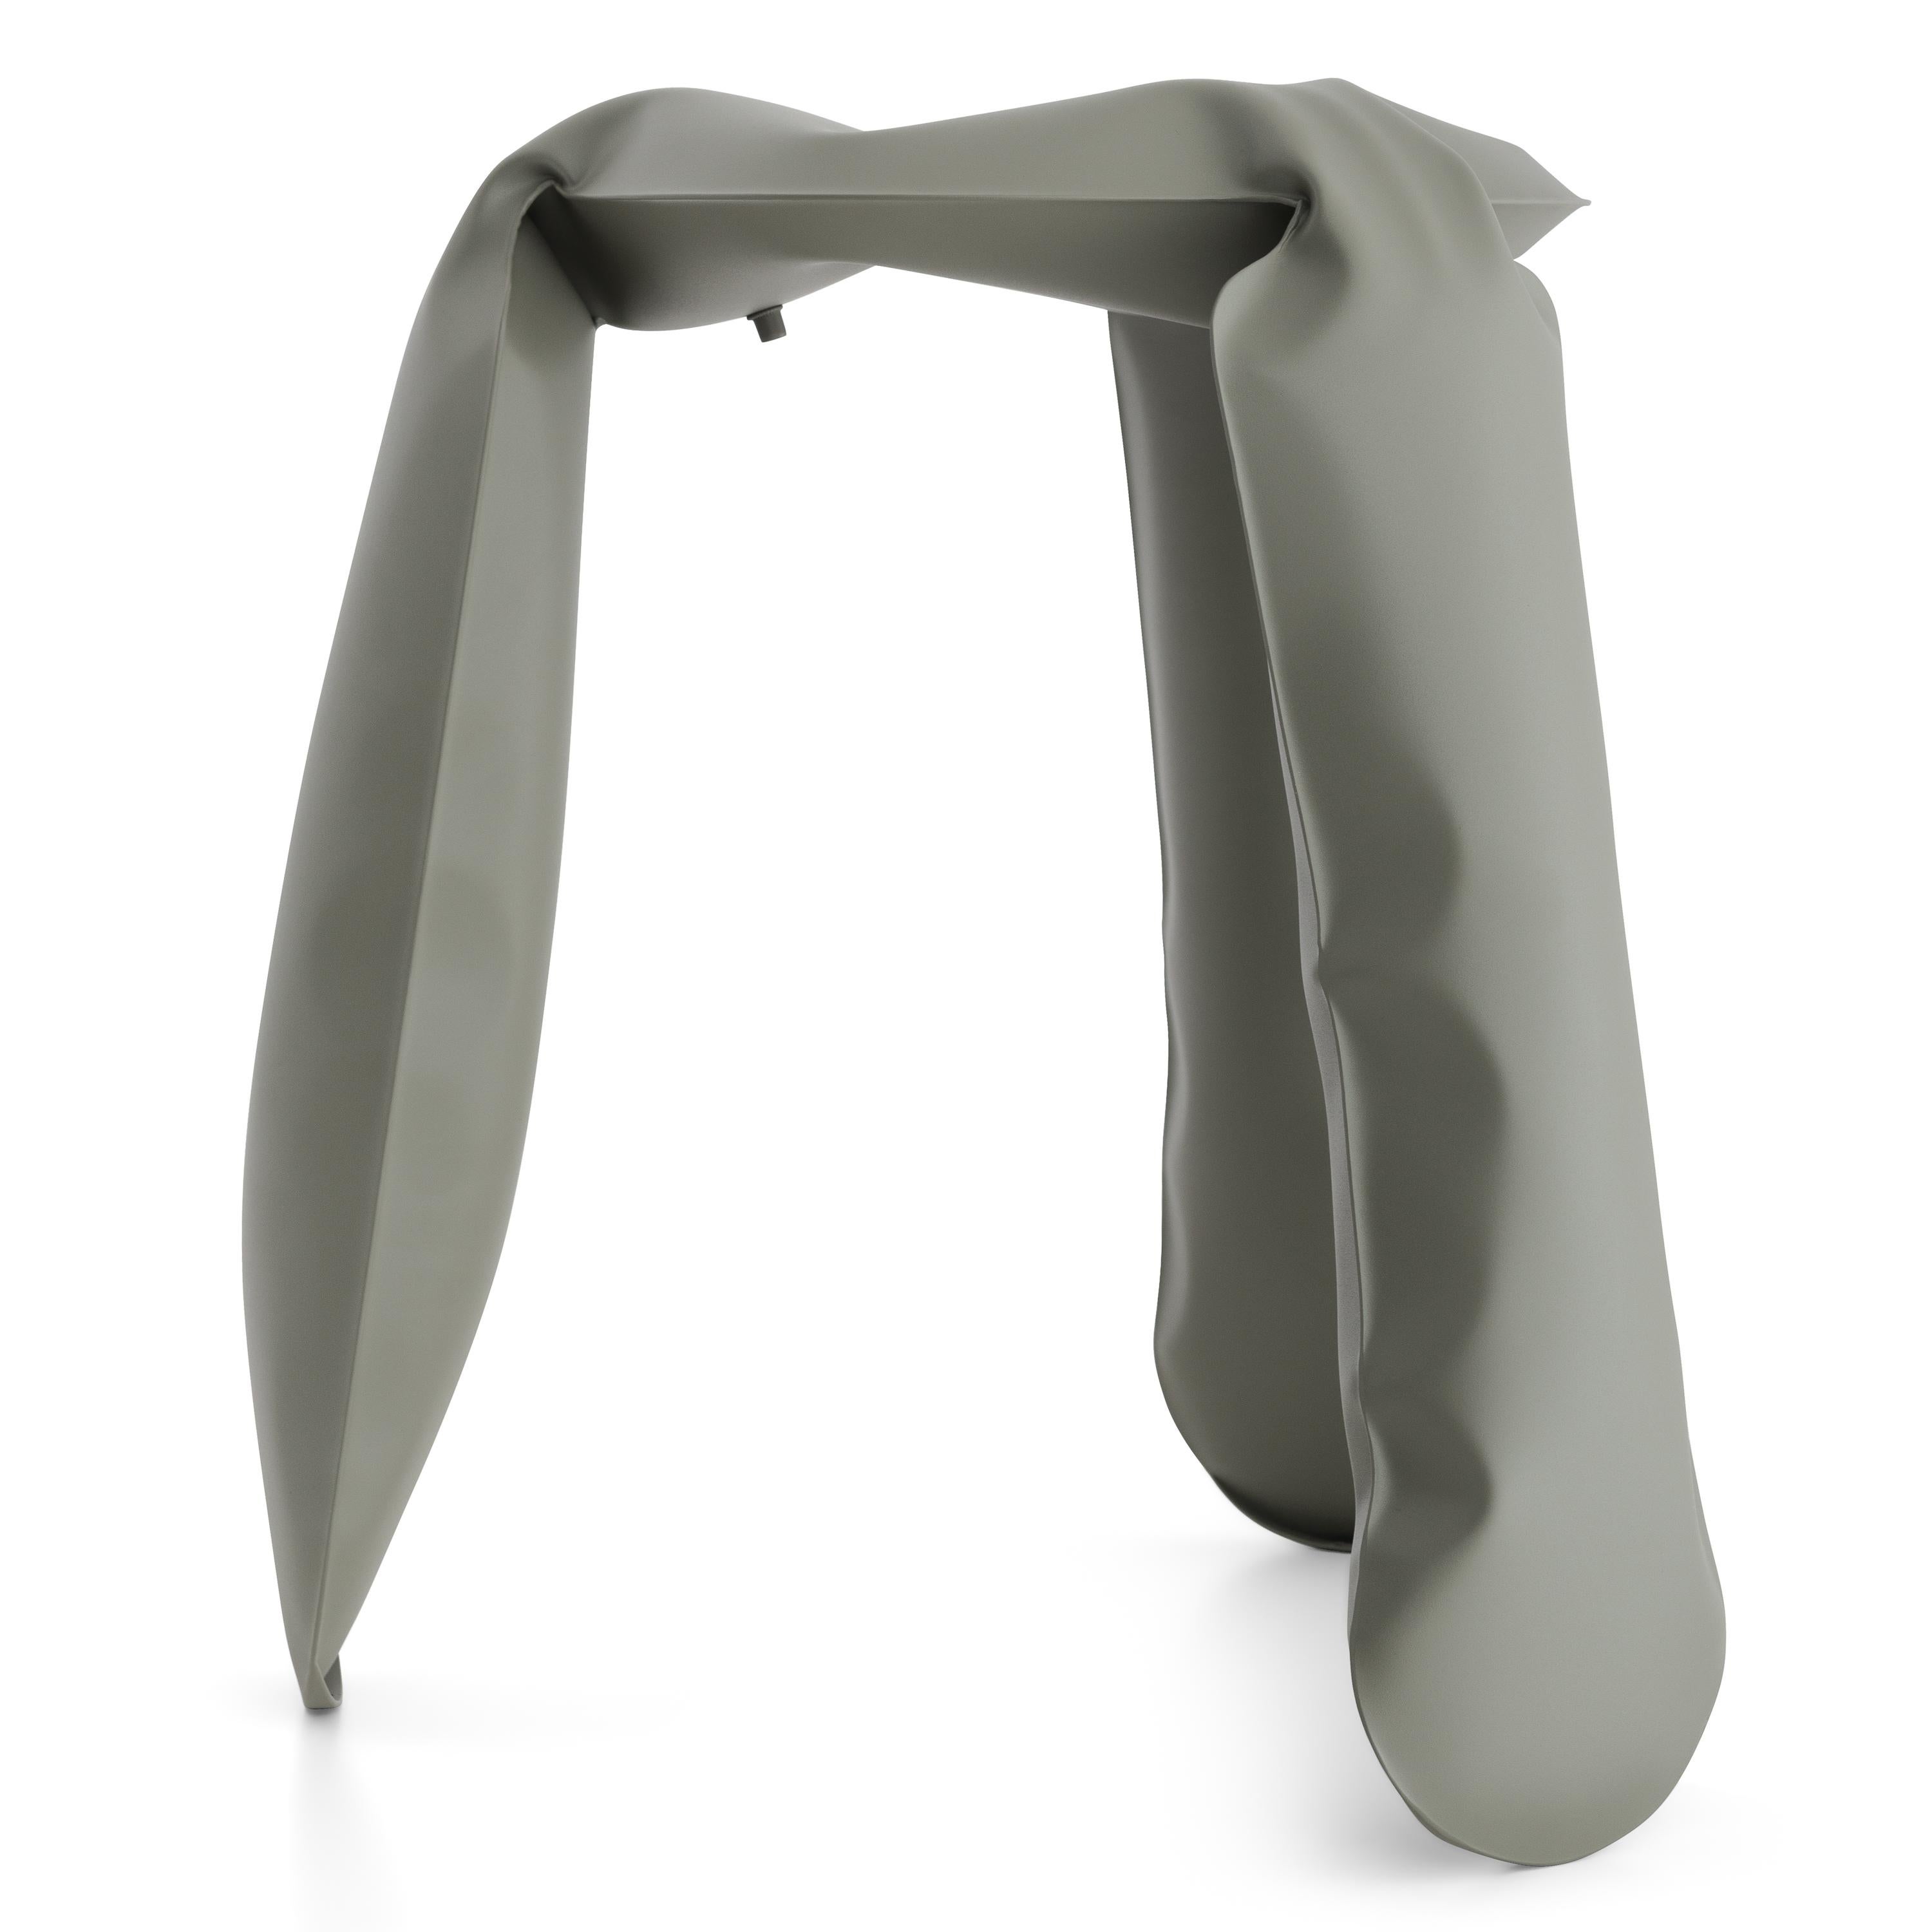 Organic Modern Moss Gray Steel Standard Plopp Stool by Zieta For Sale